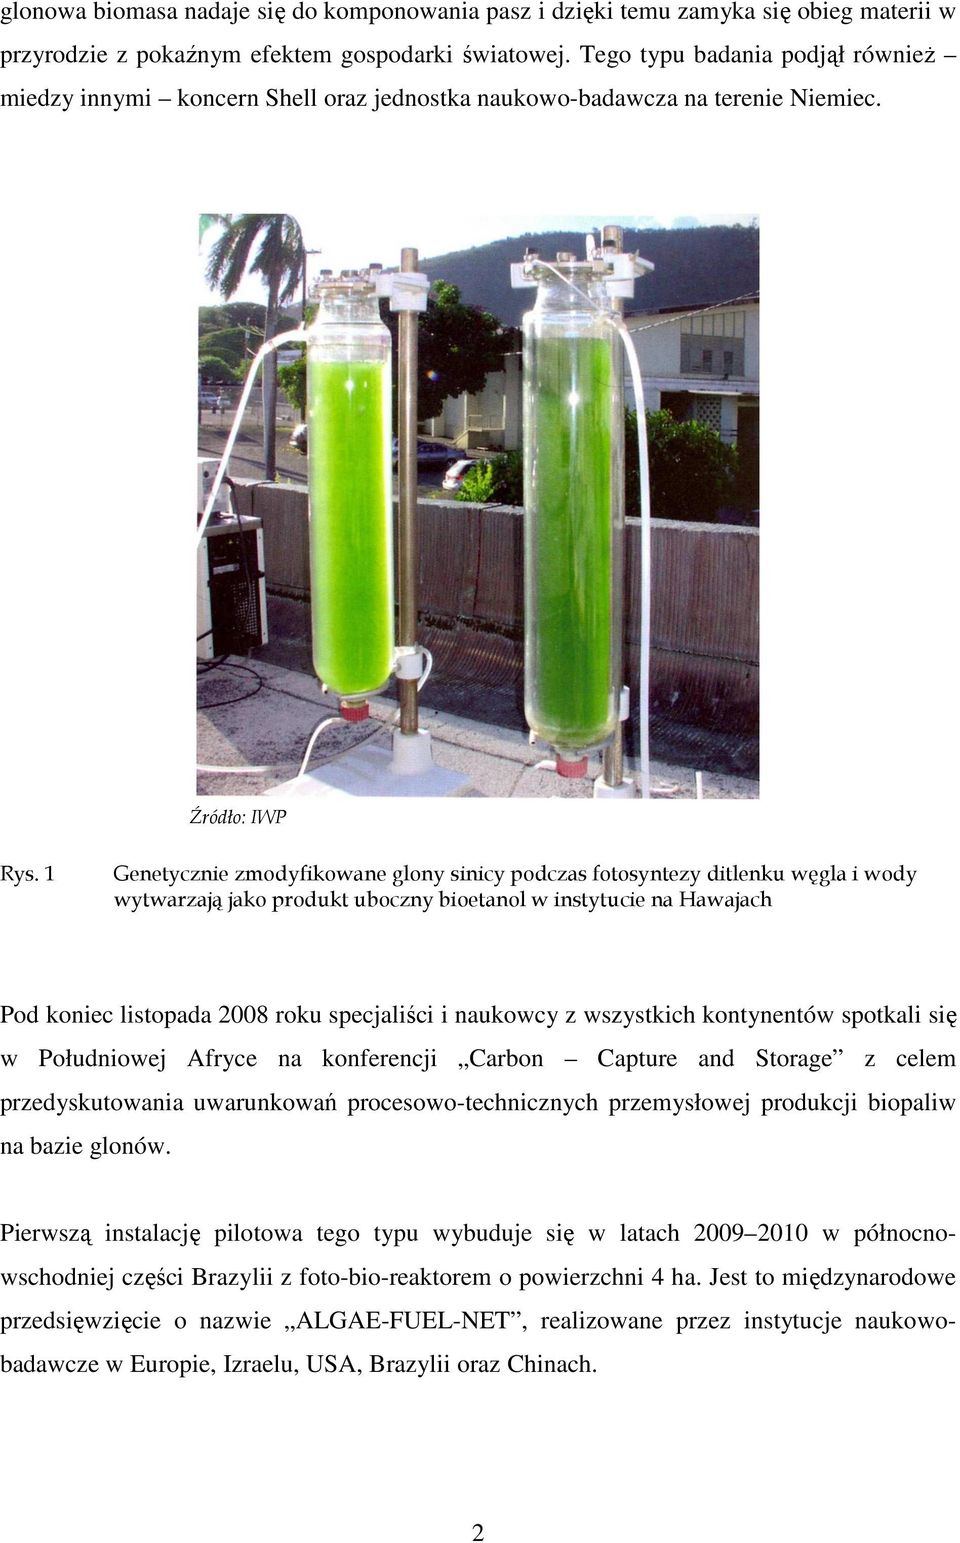 1 Genetycznie zmodyfikowane glony sinicy podczas fotosyntezy ditlenku węgla i wody wytwarzają jako produkt uboczny bioetanol w instytucie na Hawajach Pod koniec listopada 2008 roku specjaliści i